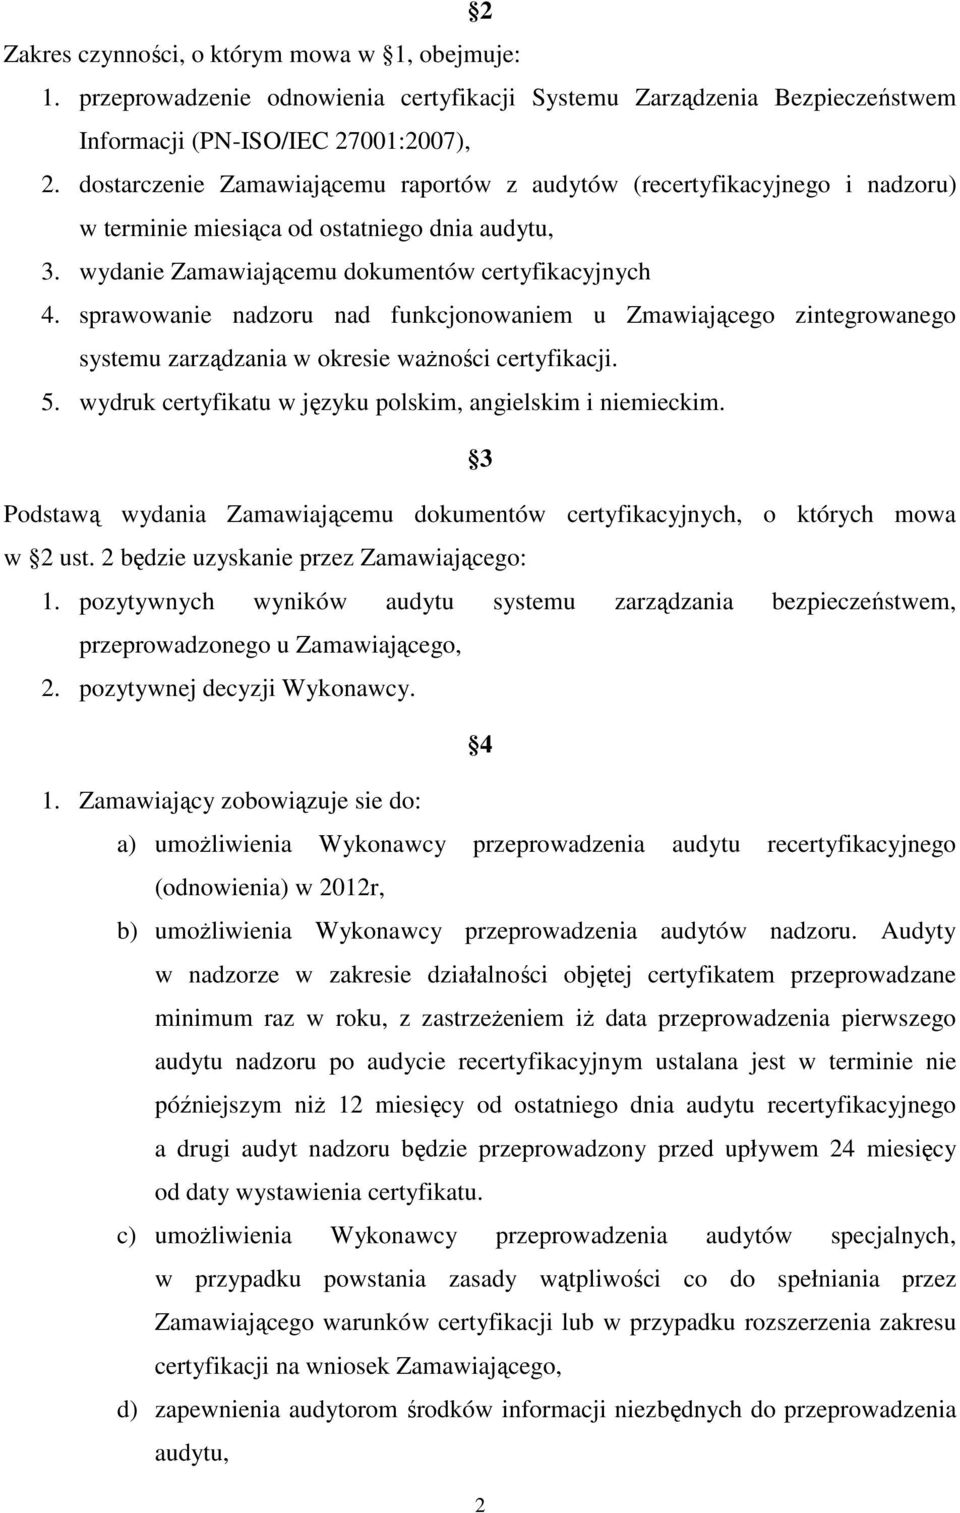 sprawowanie nadzoru nad funkcjonowaniem u Zmawiającego zintegrowanego systemu zarządzania w okresie ważności certyfikacji. 5. wydruk certyfikatu w języku polskim, angielskim i niemieckim.